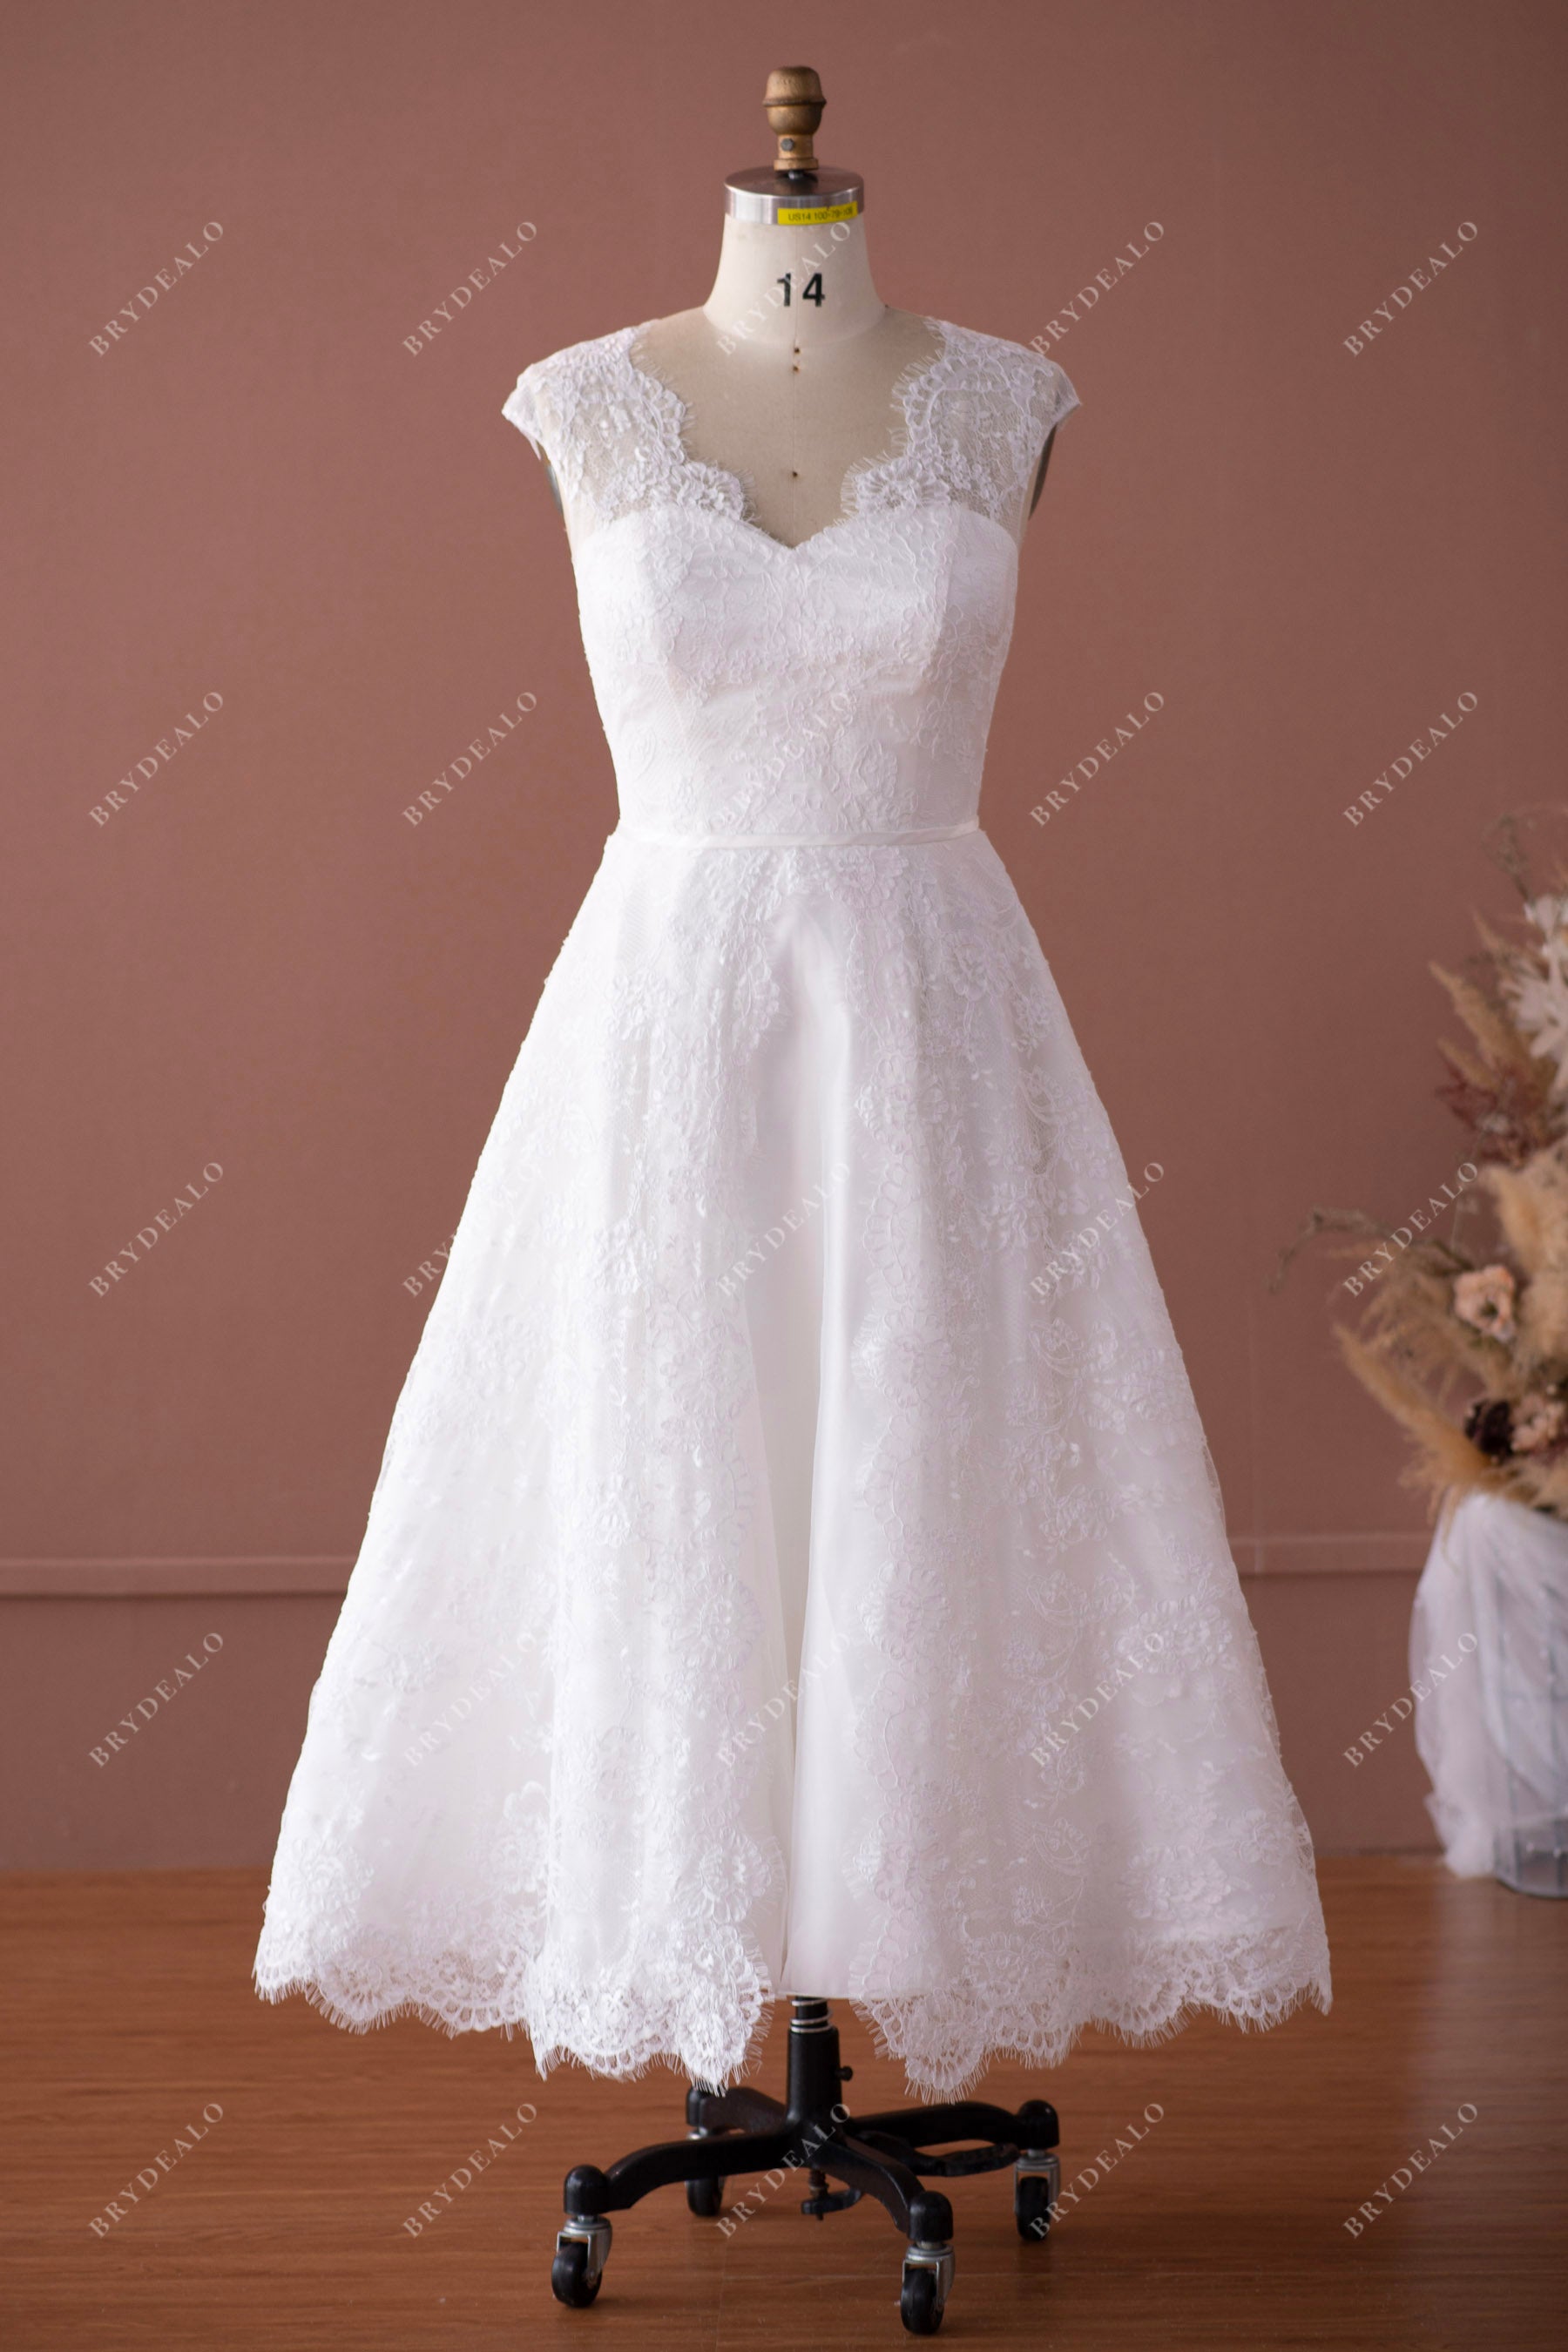 Vintage Scallop Neck Lace Tea Length Wedding Dress